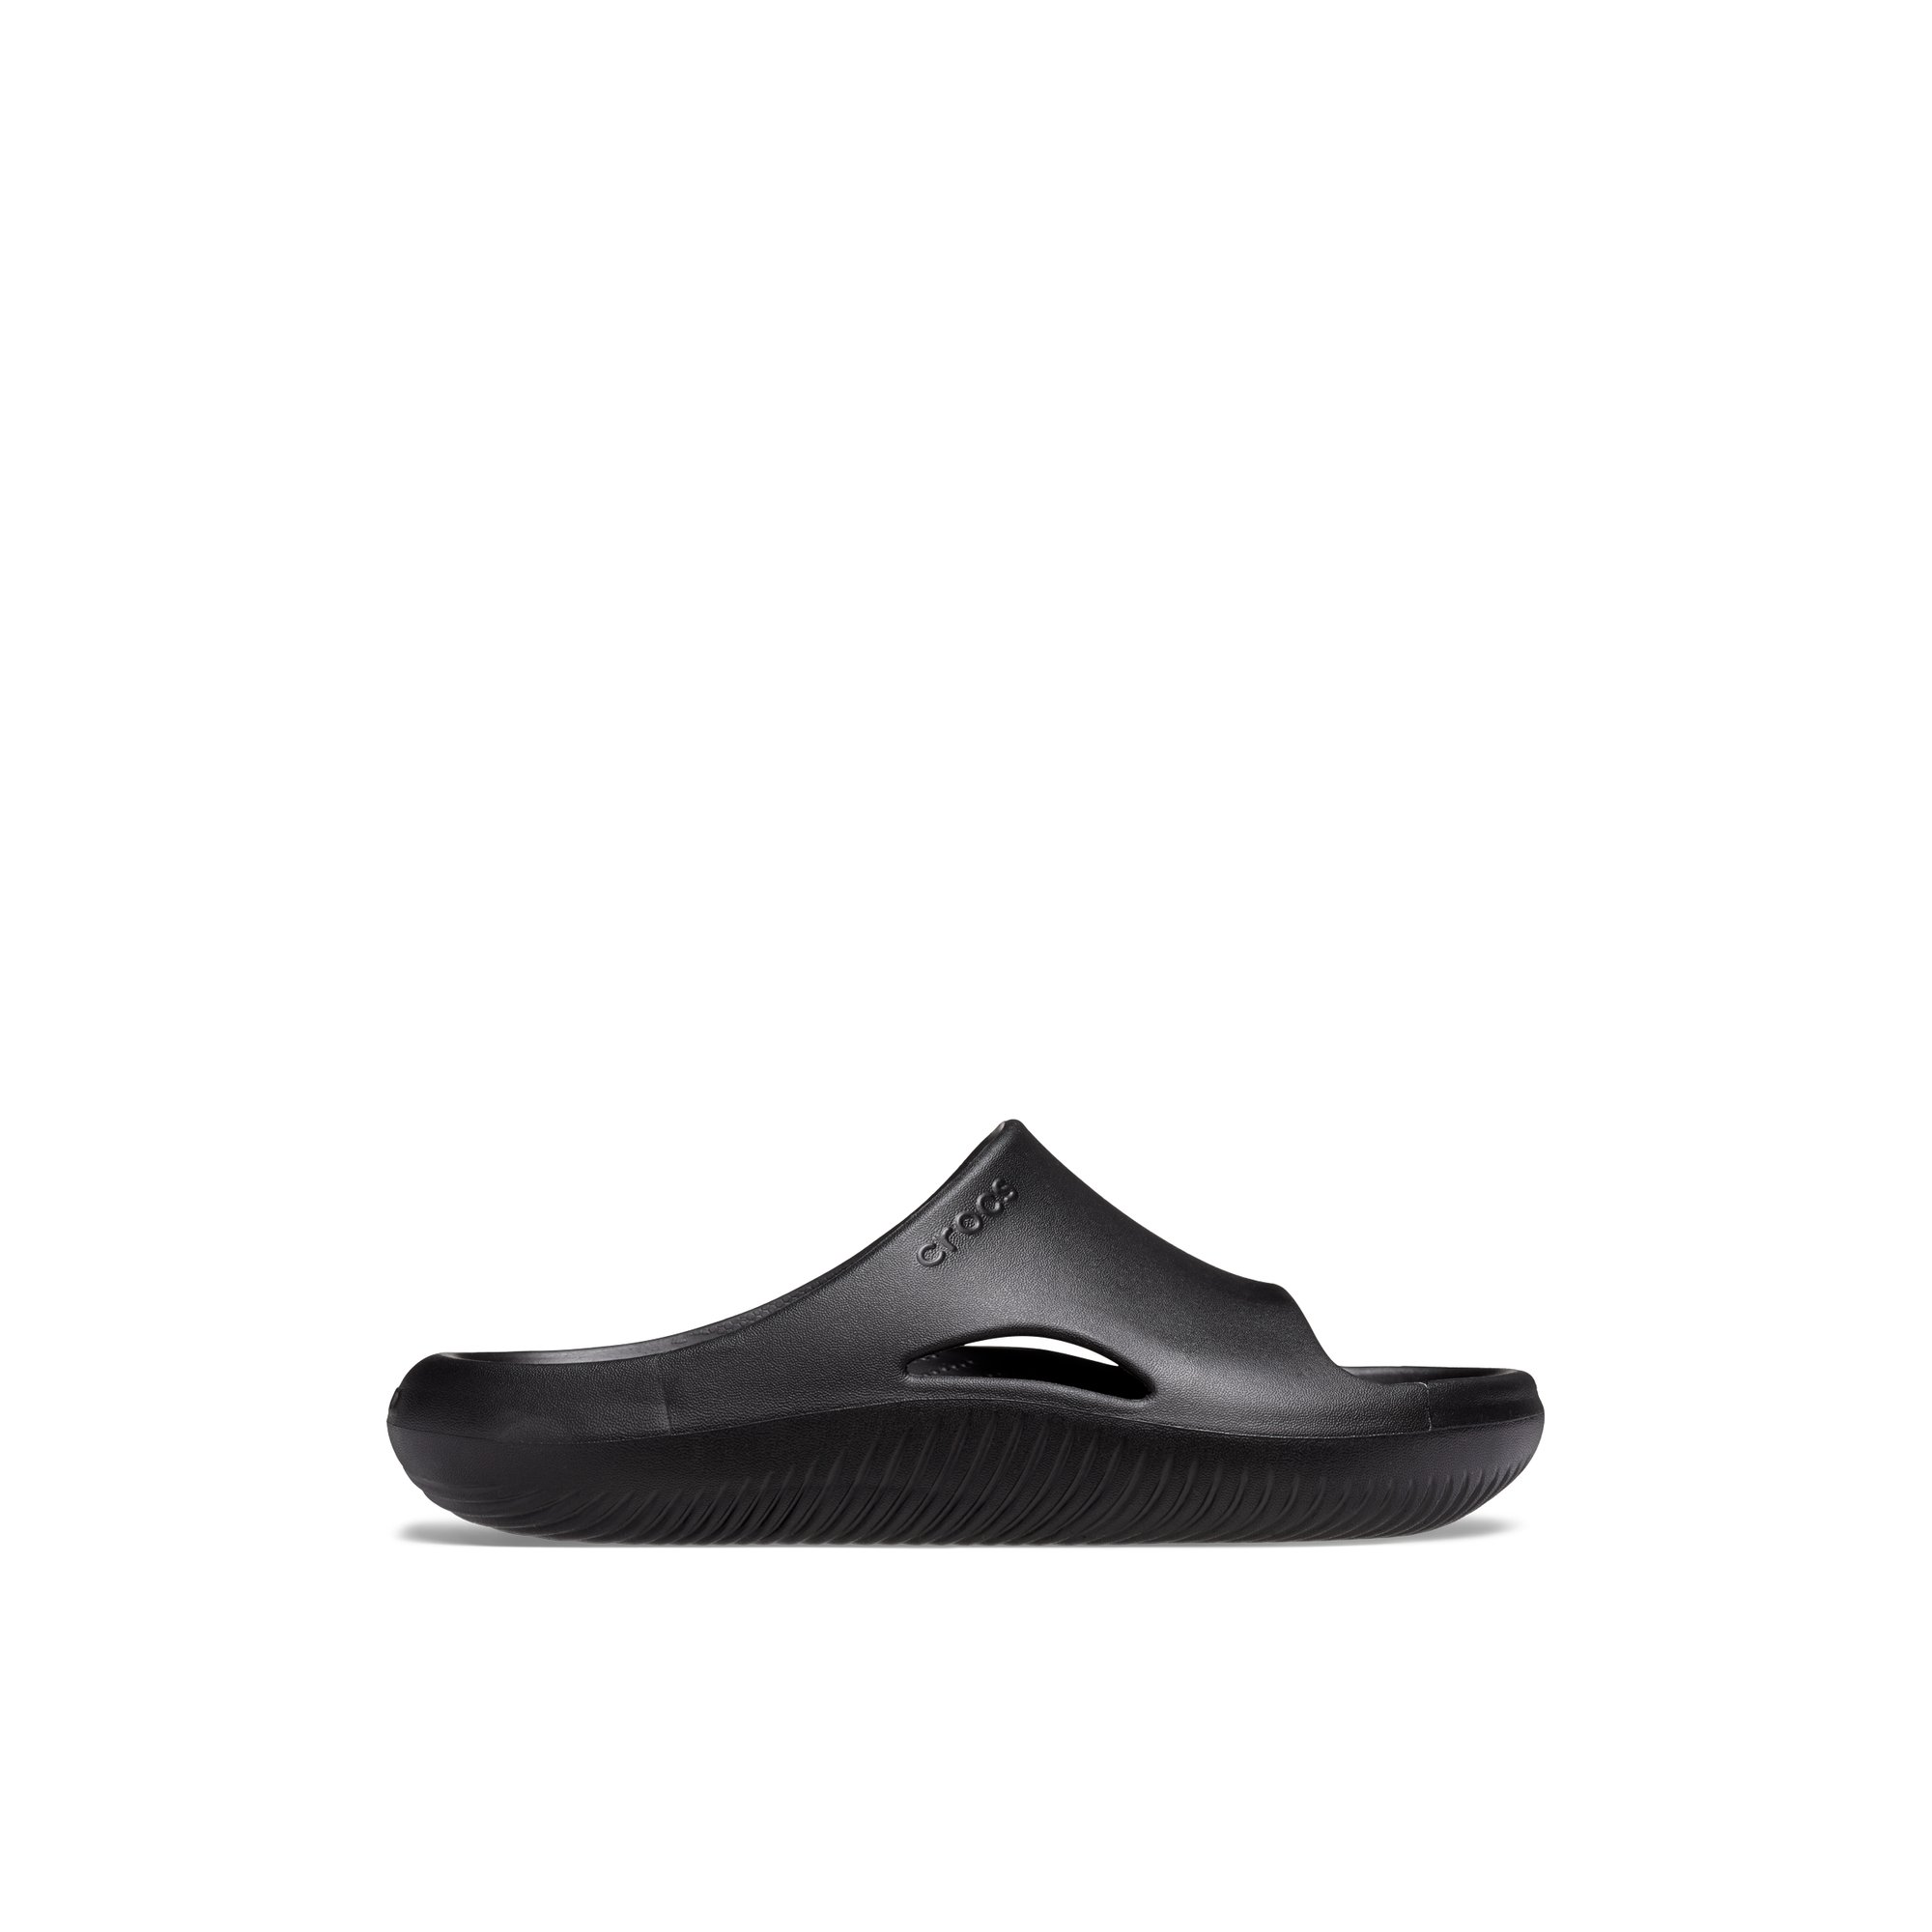 Crocs Mellow Slide - Men's Footwear Sandals Slides - Black